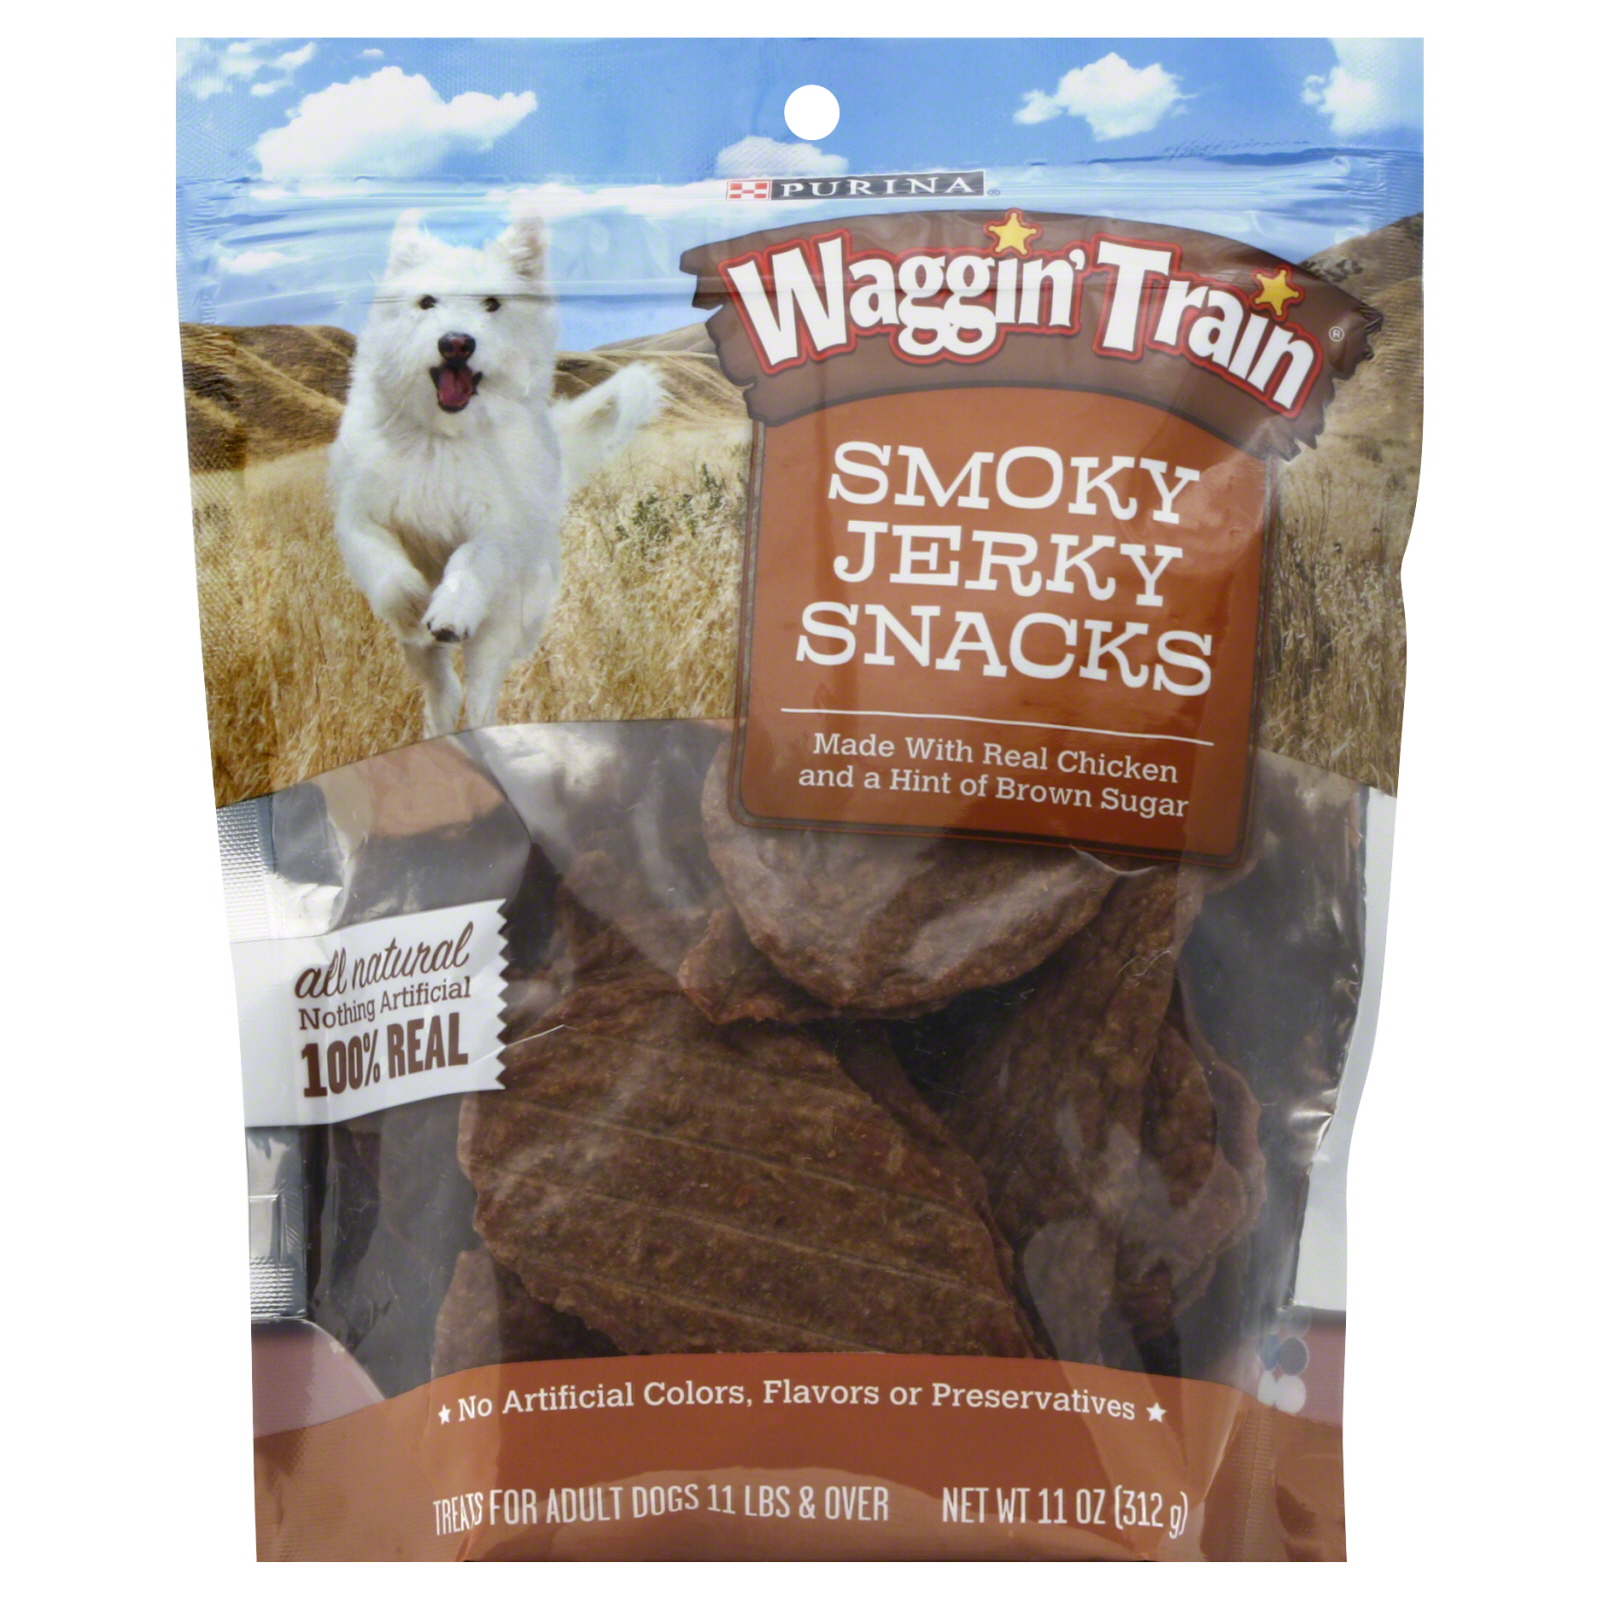 Waggin' Train Smoky Jerky Dog Snacks, 11 oz. pouch